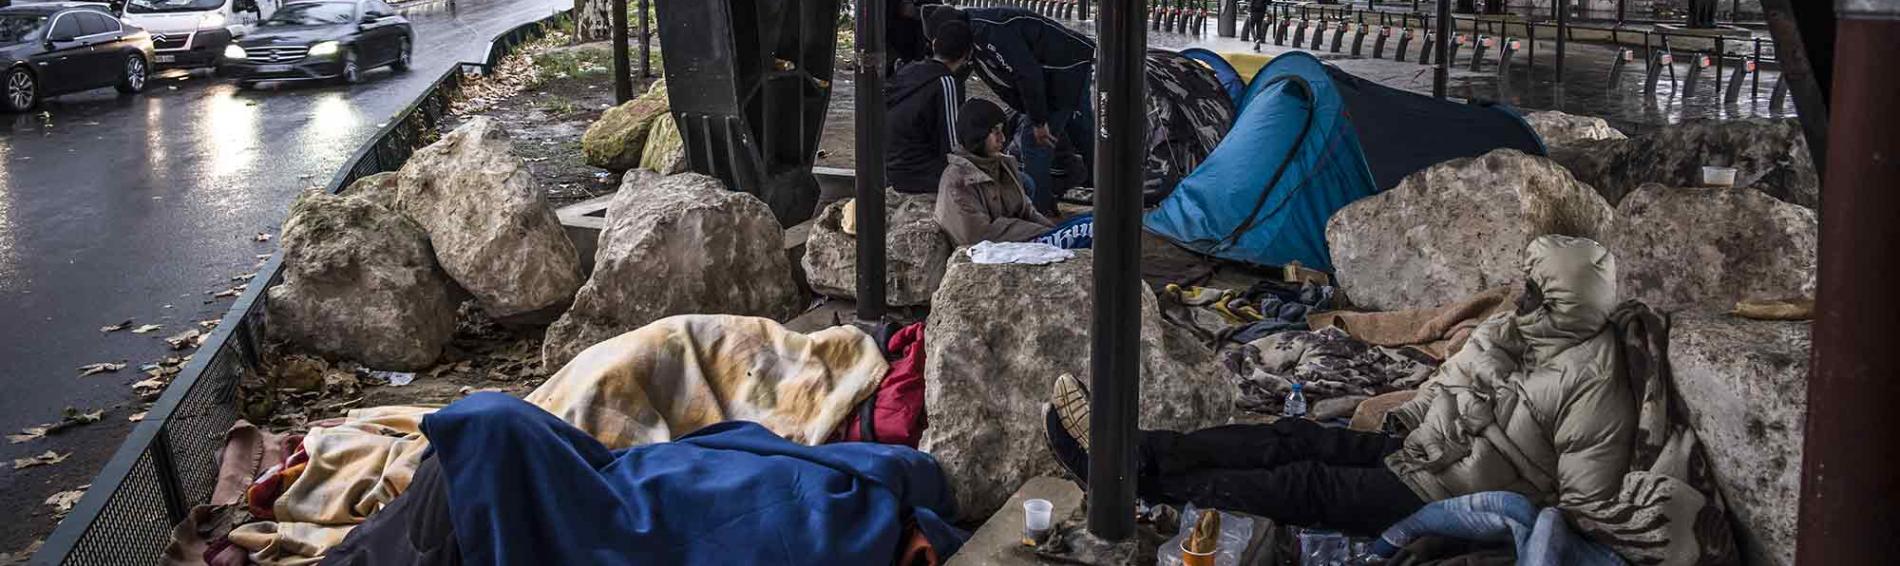 In der französischen Hauptstadt sind viele Migrant*innen gezwungen, in behelfsmäßigen Lagern unter desatrösen hygienischen Bedingungen zu kampieren. Pgoto: Olivier Papegnies